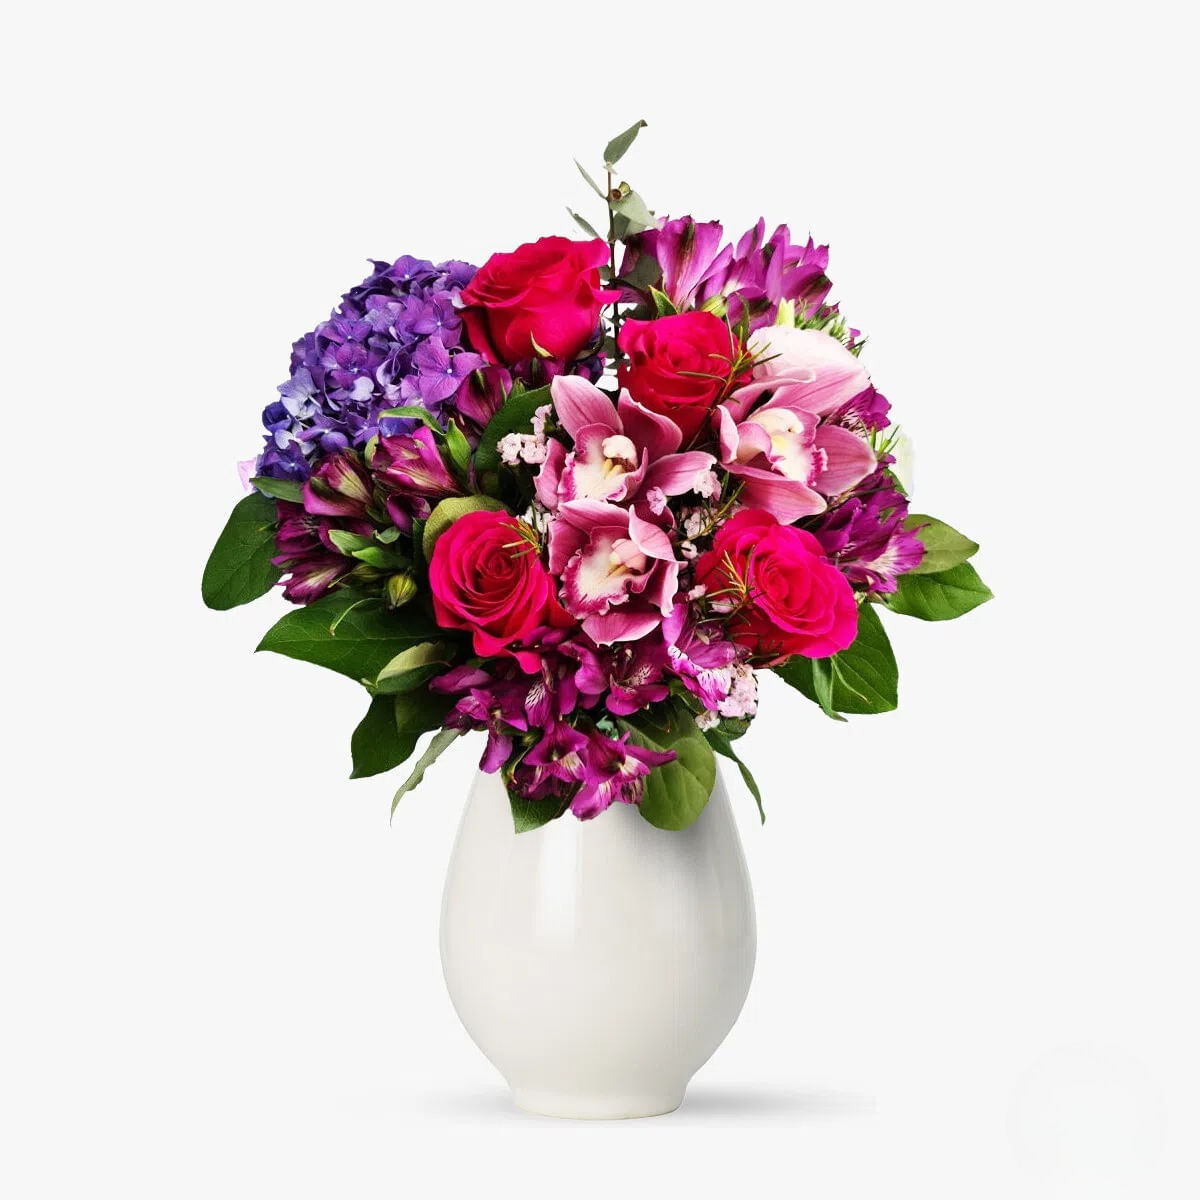 Buchet de flori – Iubirea perfecta – Premium Buchet